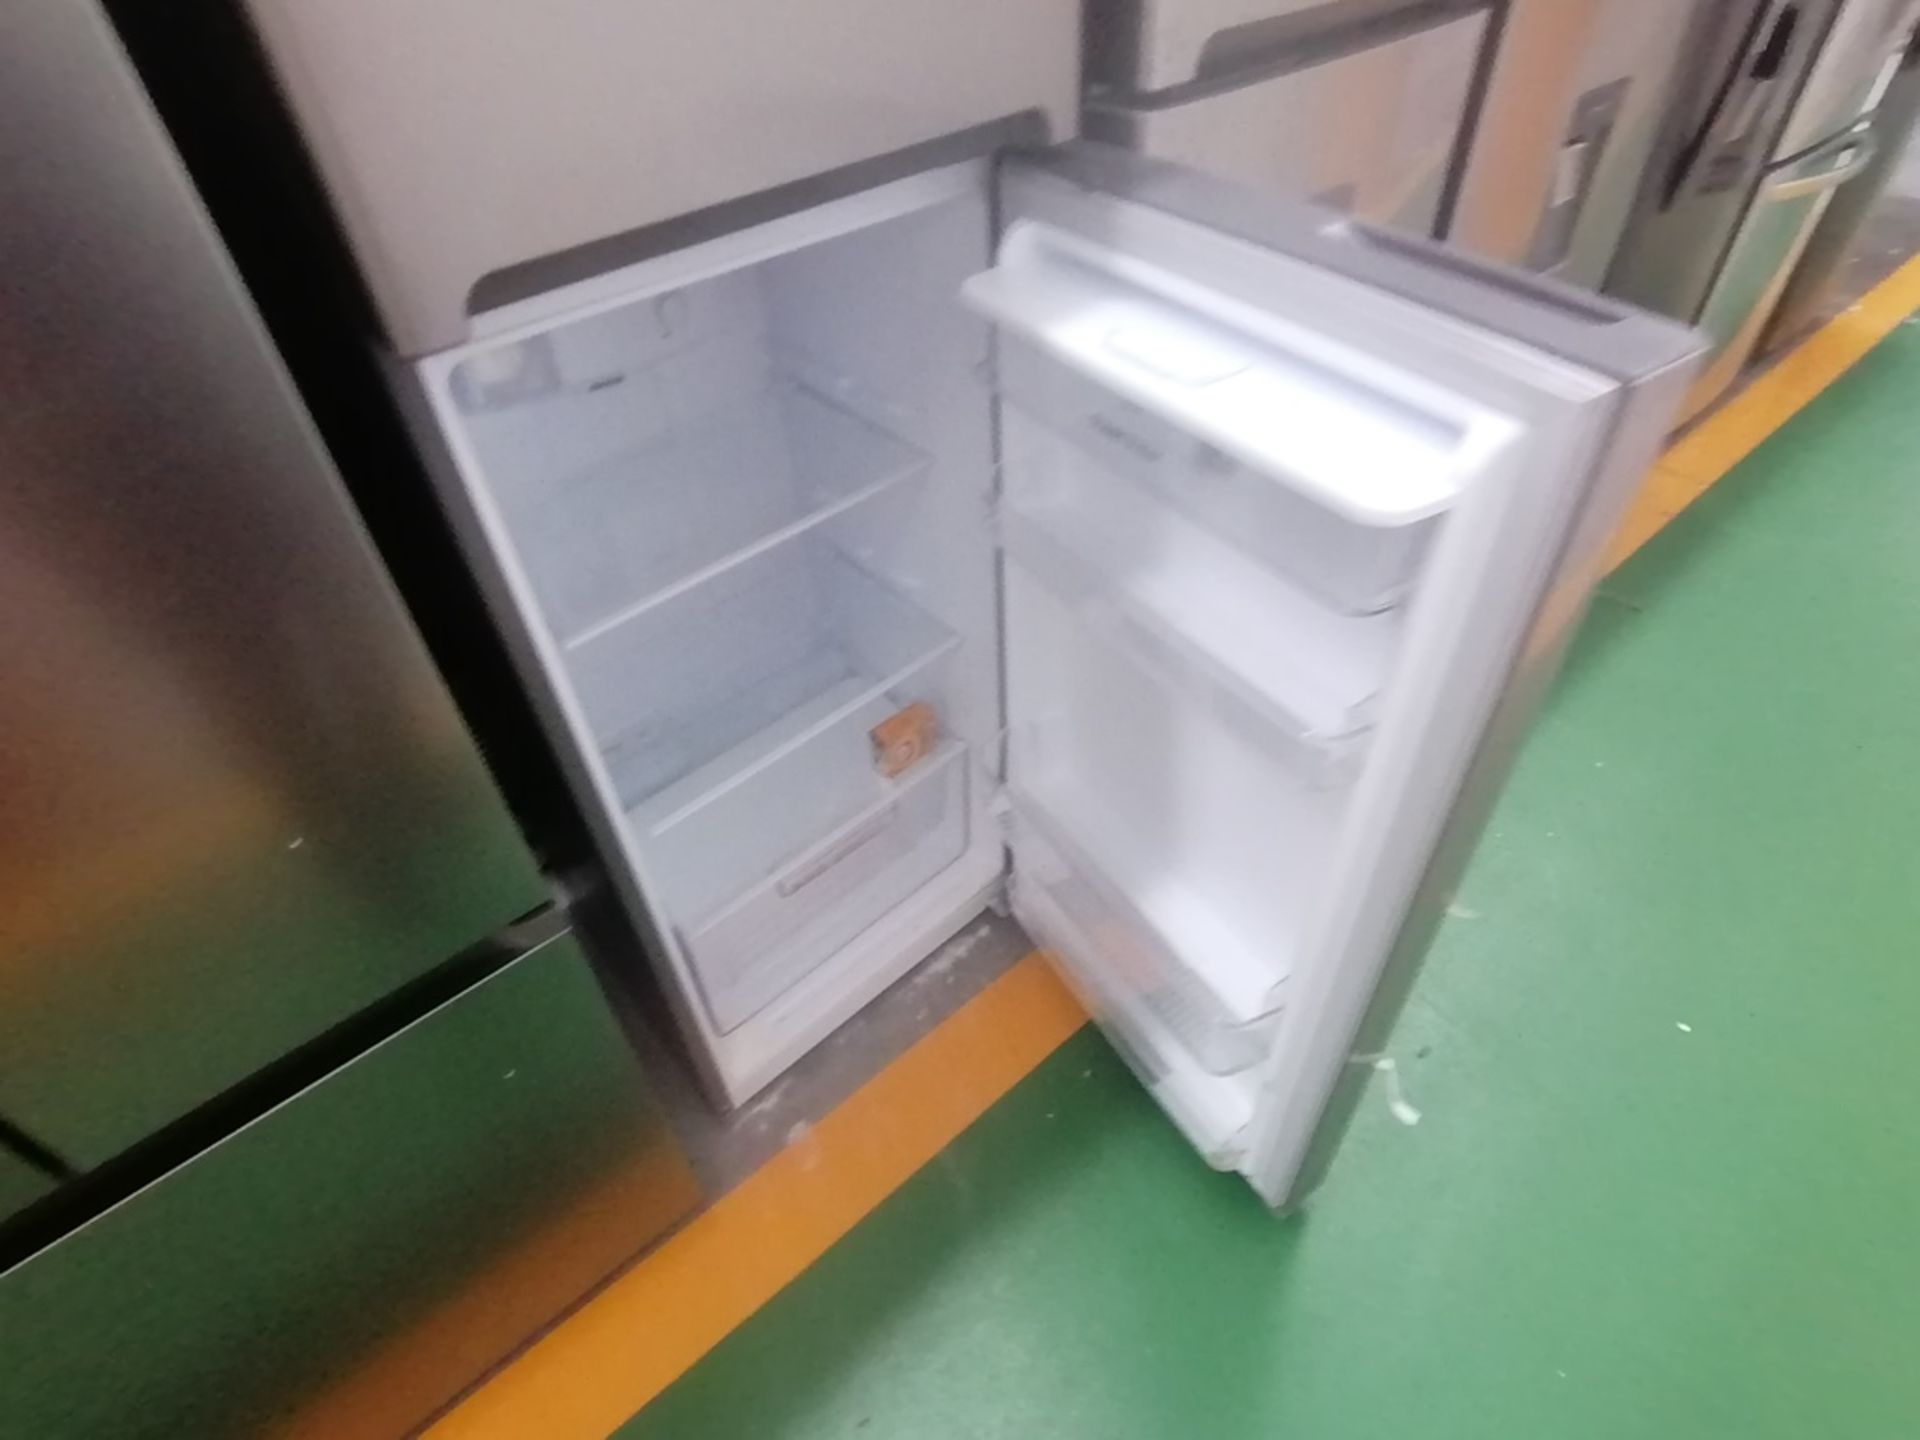 Lote de 2 refrigeradores incluye: 1 Refrigerador con dispensador de agua, Marca Winia, Modelo DFR40 - Image 14 of 16